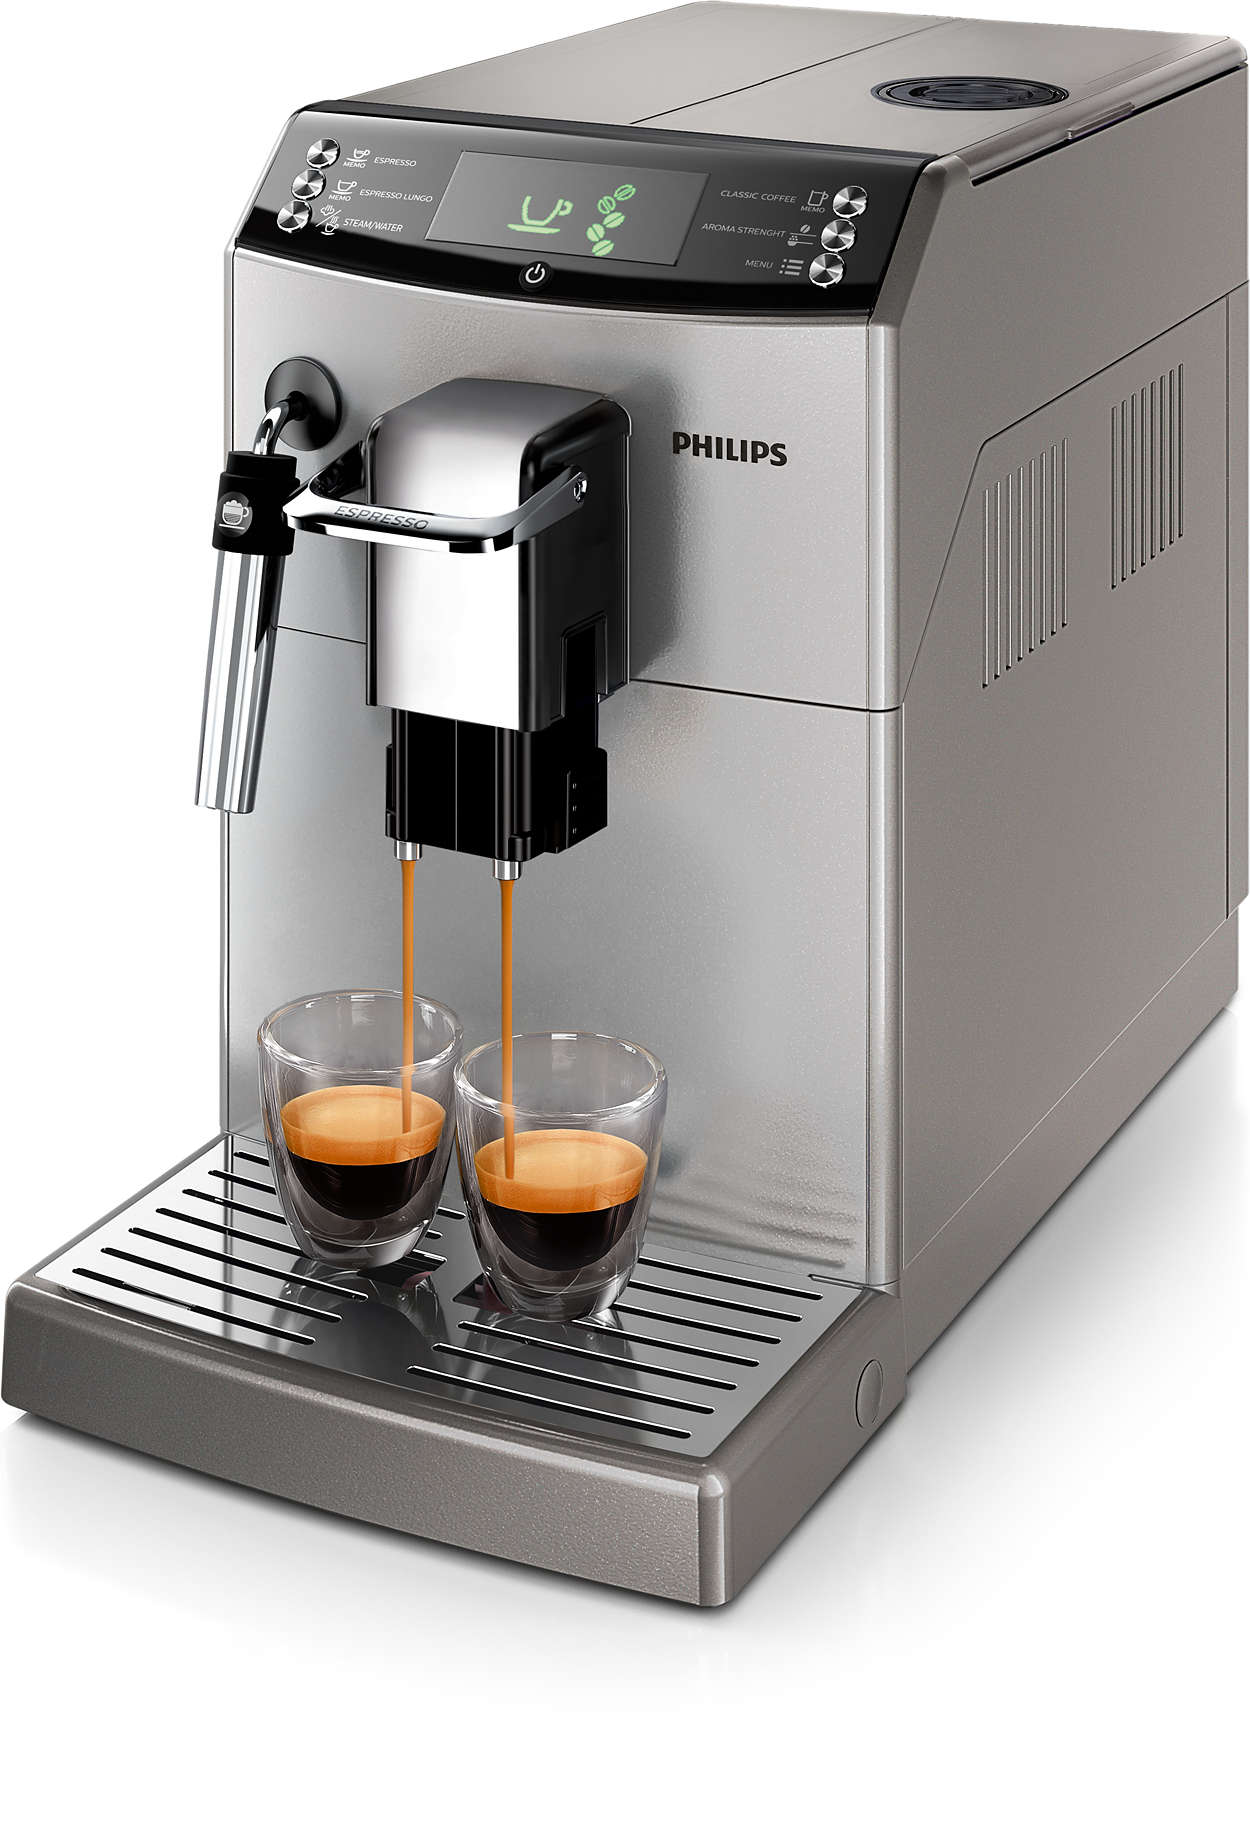 Sanfter Kaffee oder intensiver Espresso - Sie haben die Wahl!